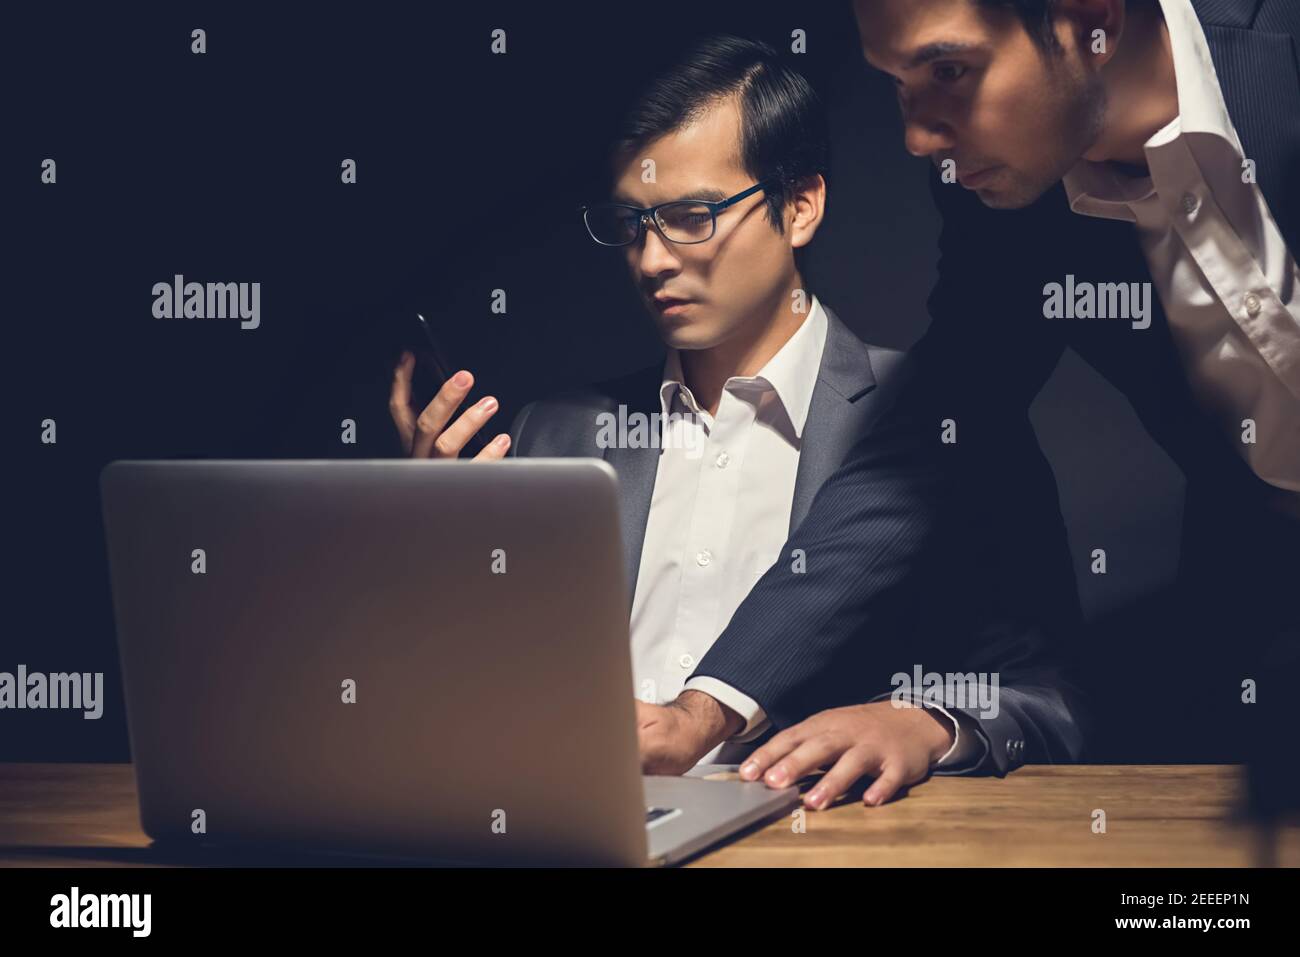 Geschäftsleute, die einen Laptop benutzen, arbeiten spät in der Nacht im Dunkeln Raum - Workaholic und Hacker-Konzept Stockfoto